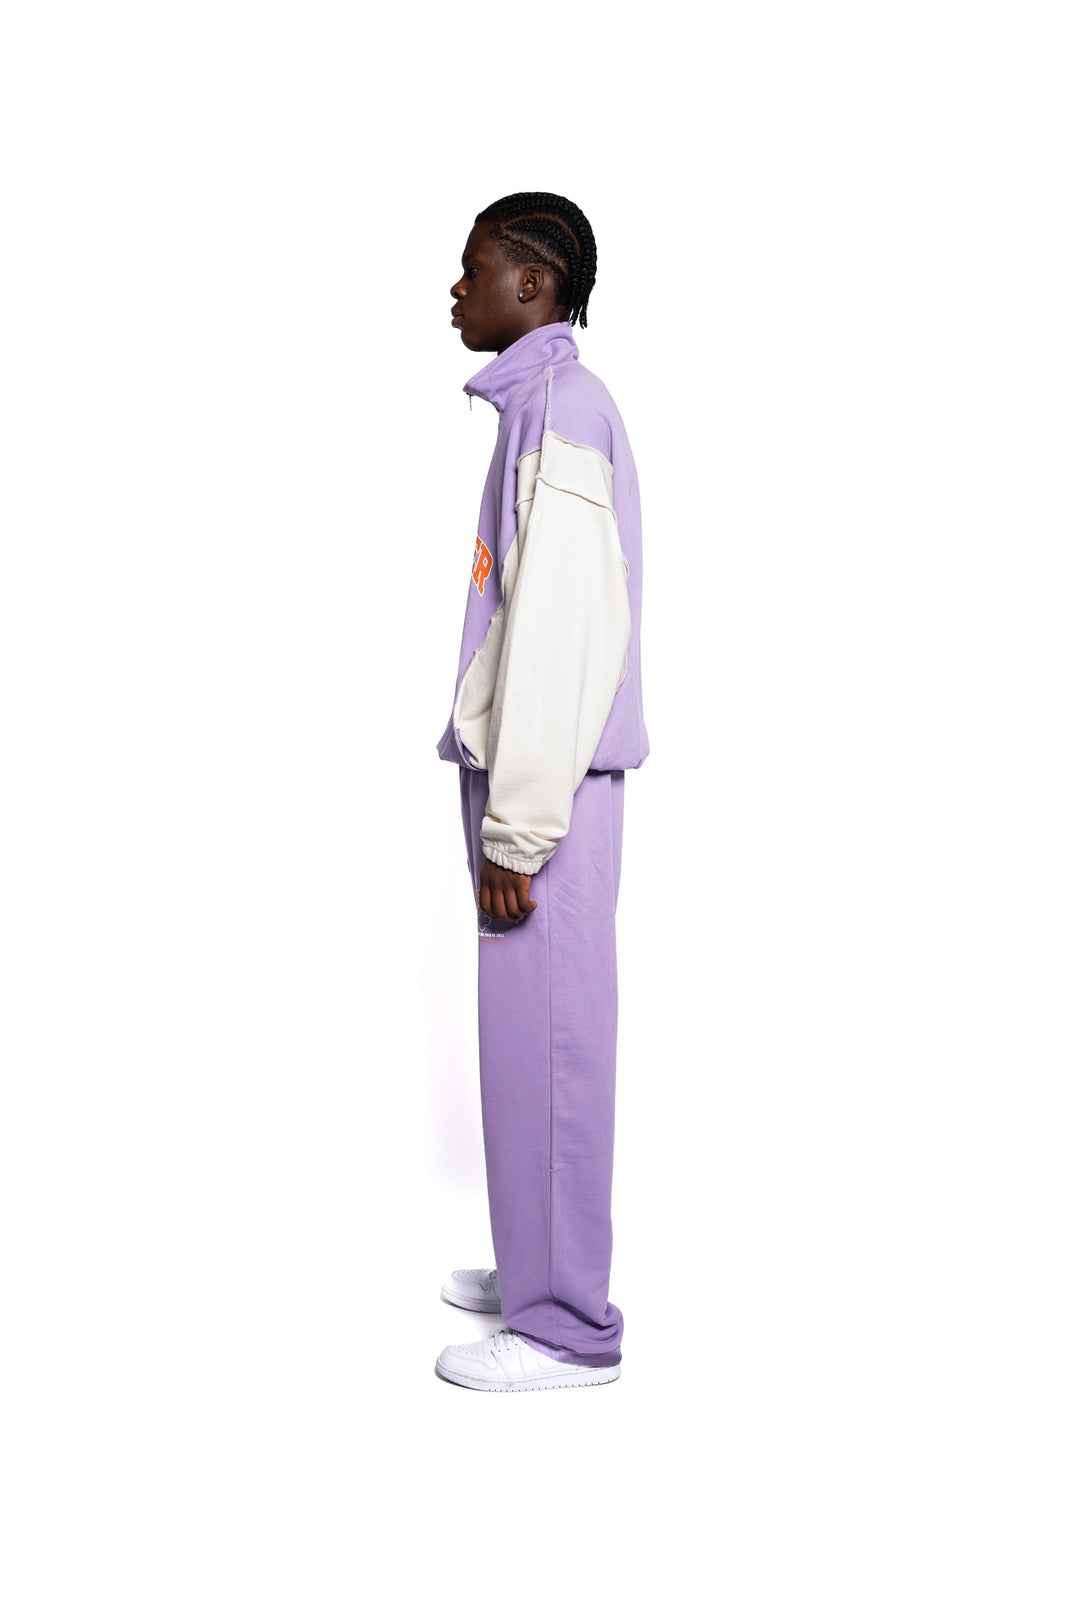 Seitenansicht des Streetwear-Outfits von Decider, pastell-lila Sweatpants kombiniert mit dem Half Zip Pullover, präsentiert in urbaner Pose.